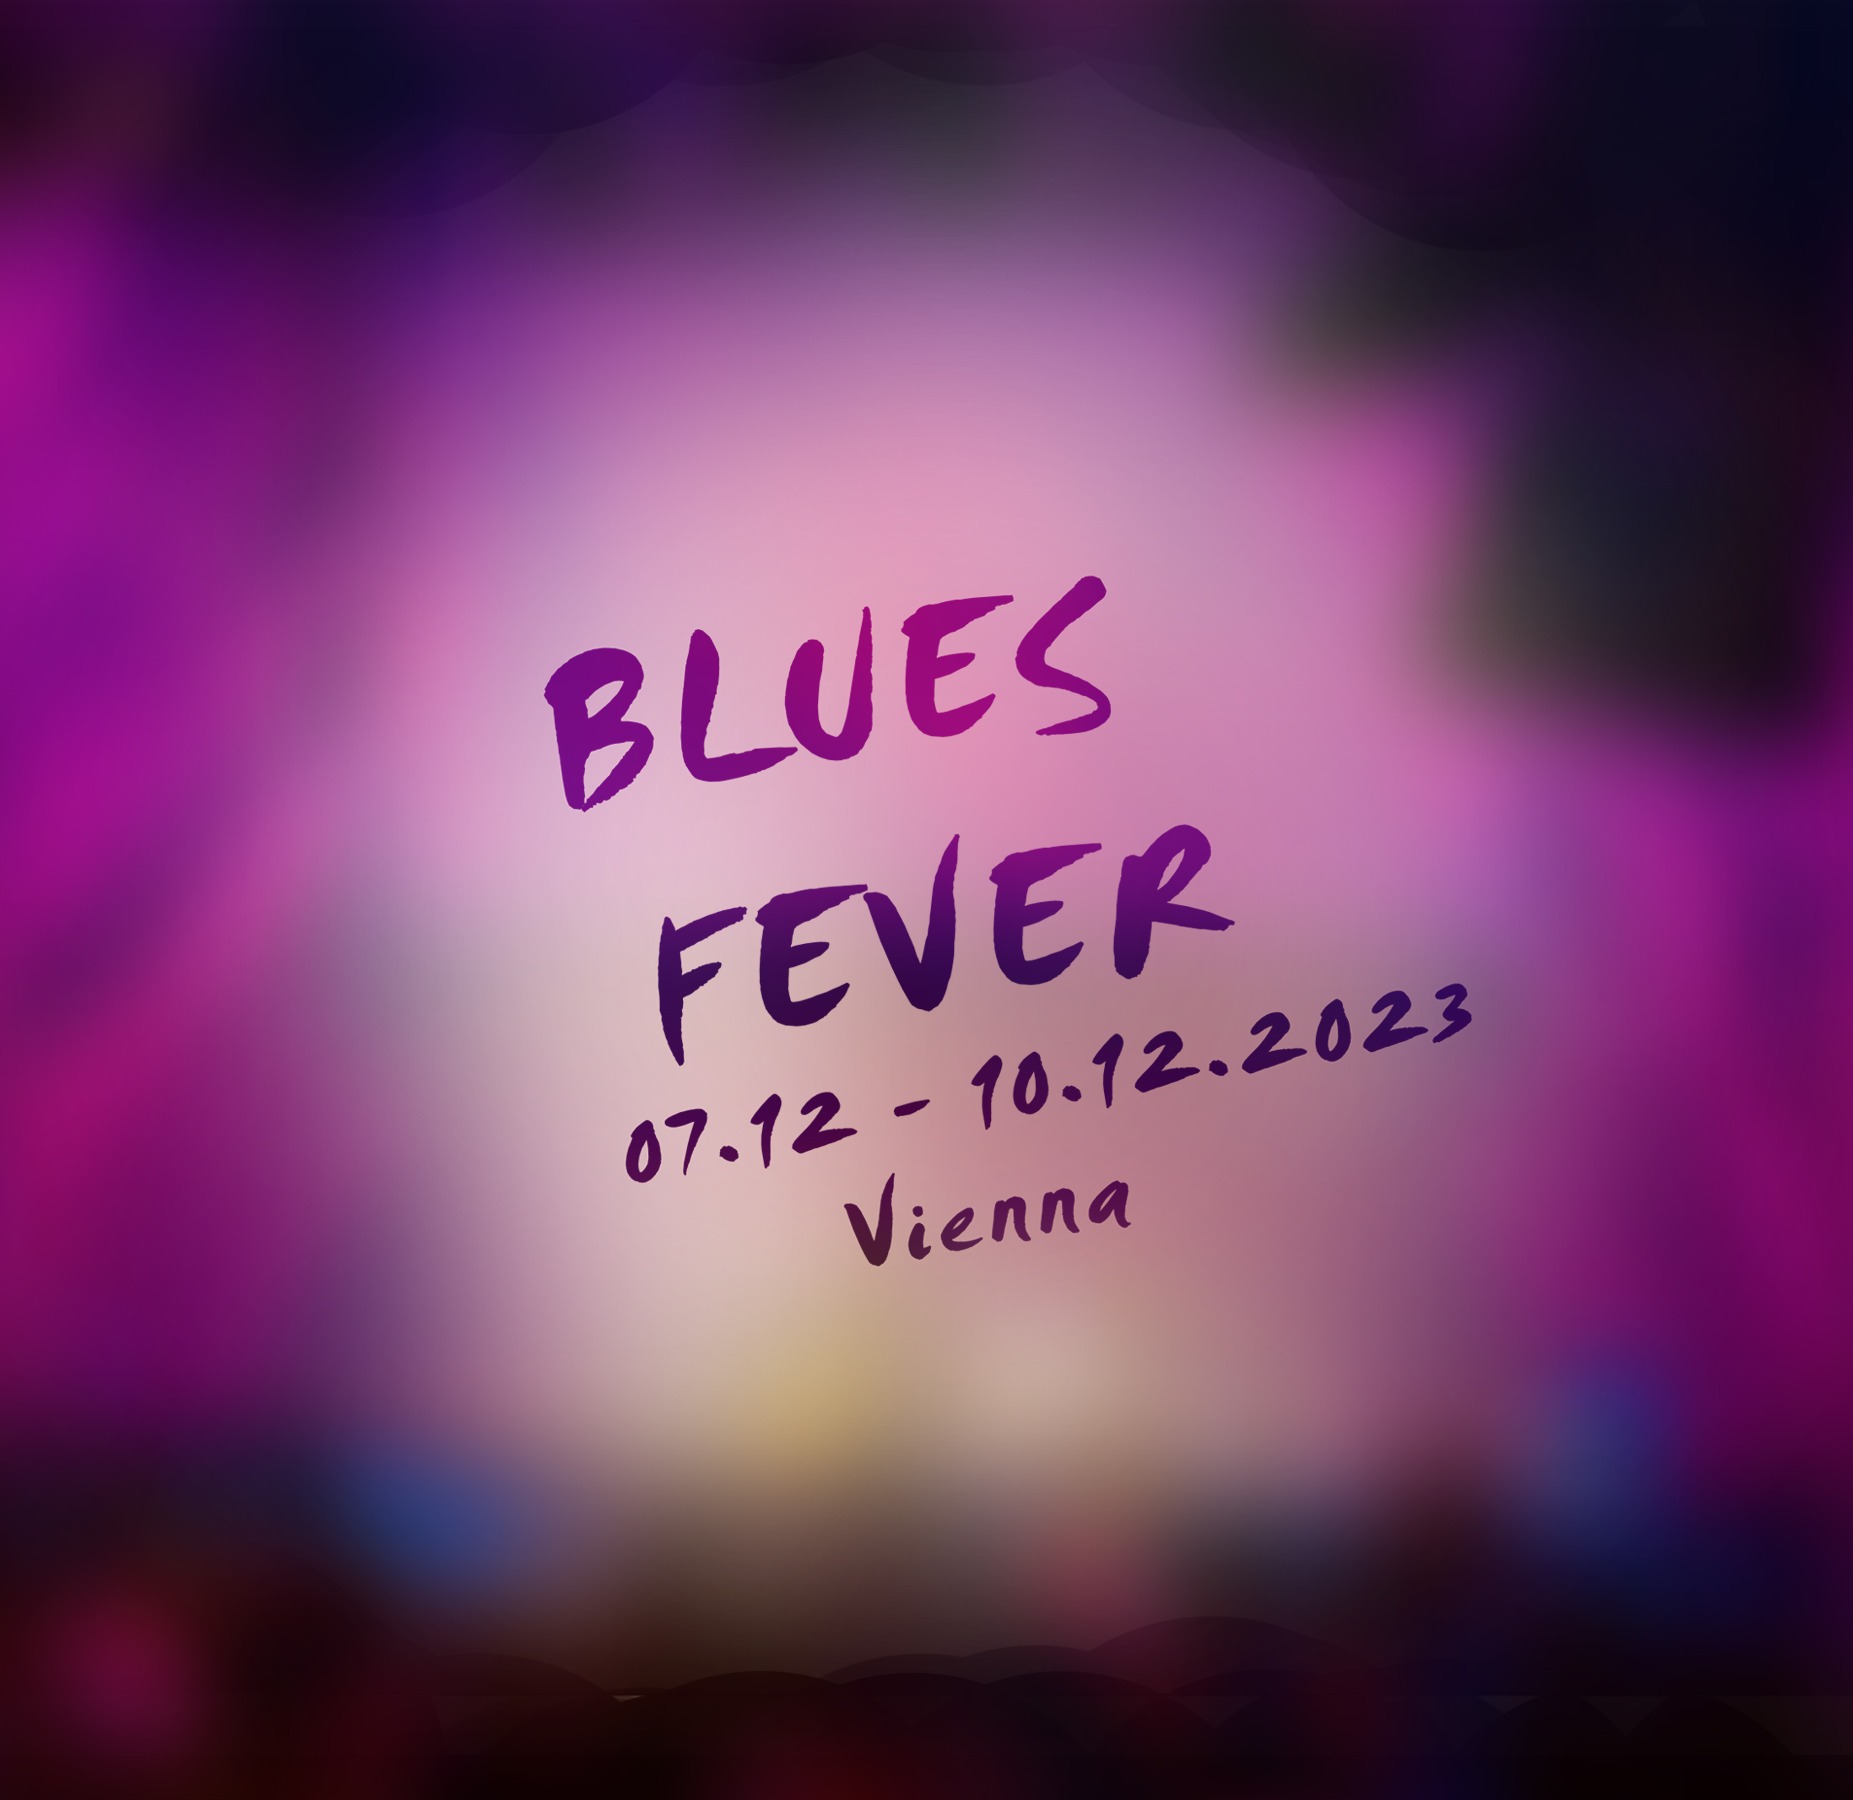 Blues Fever Festival